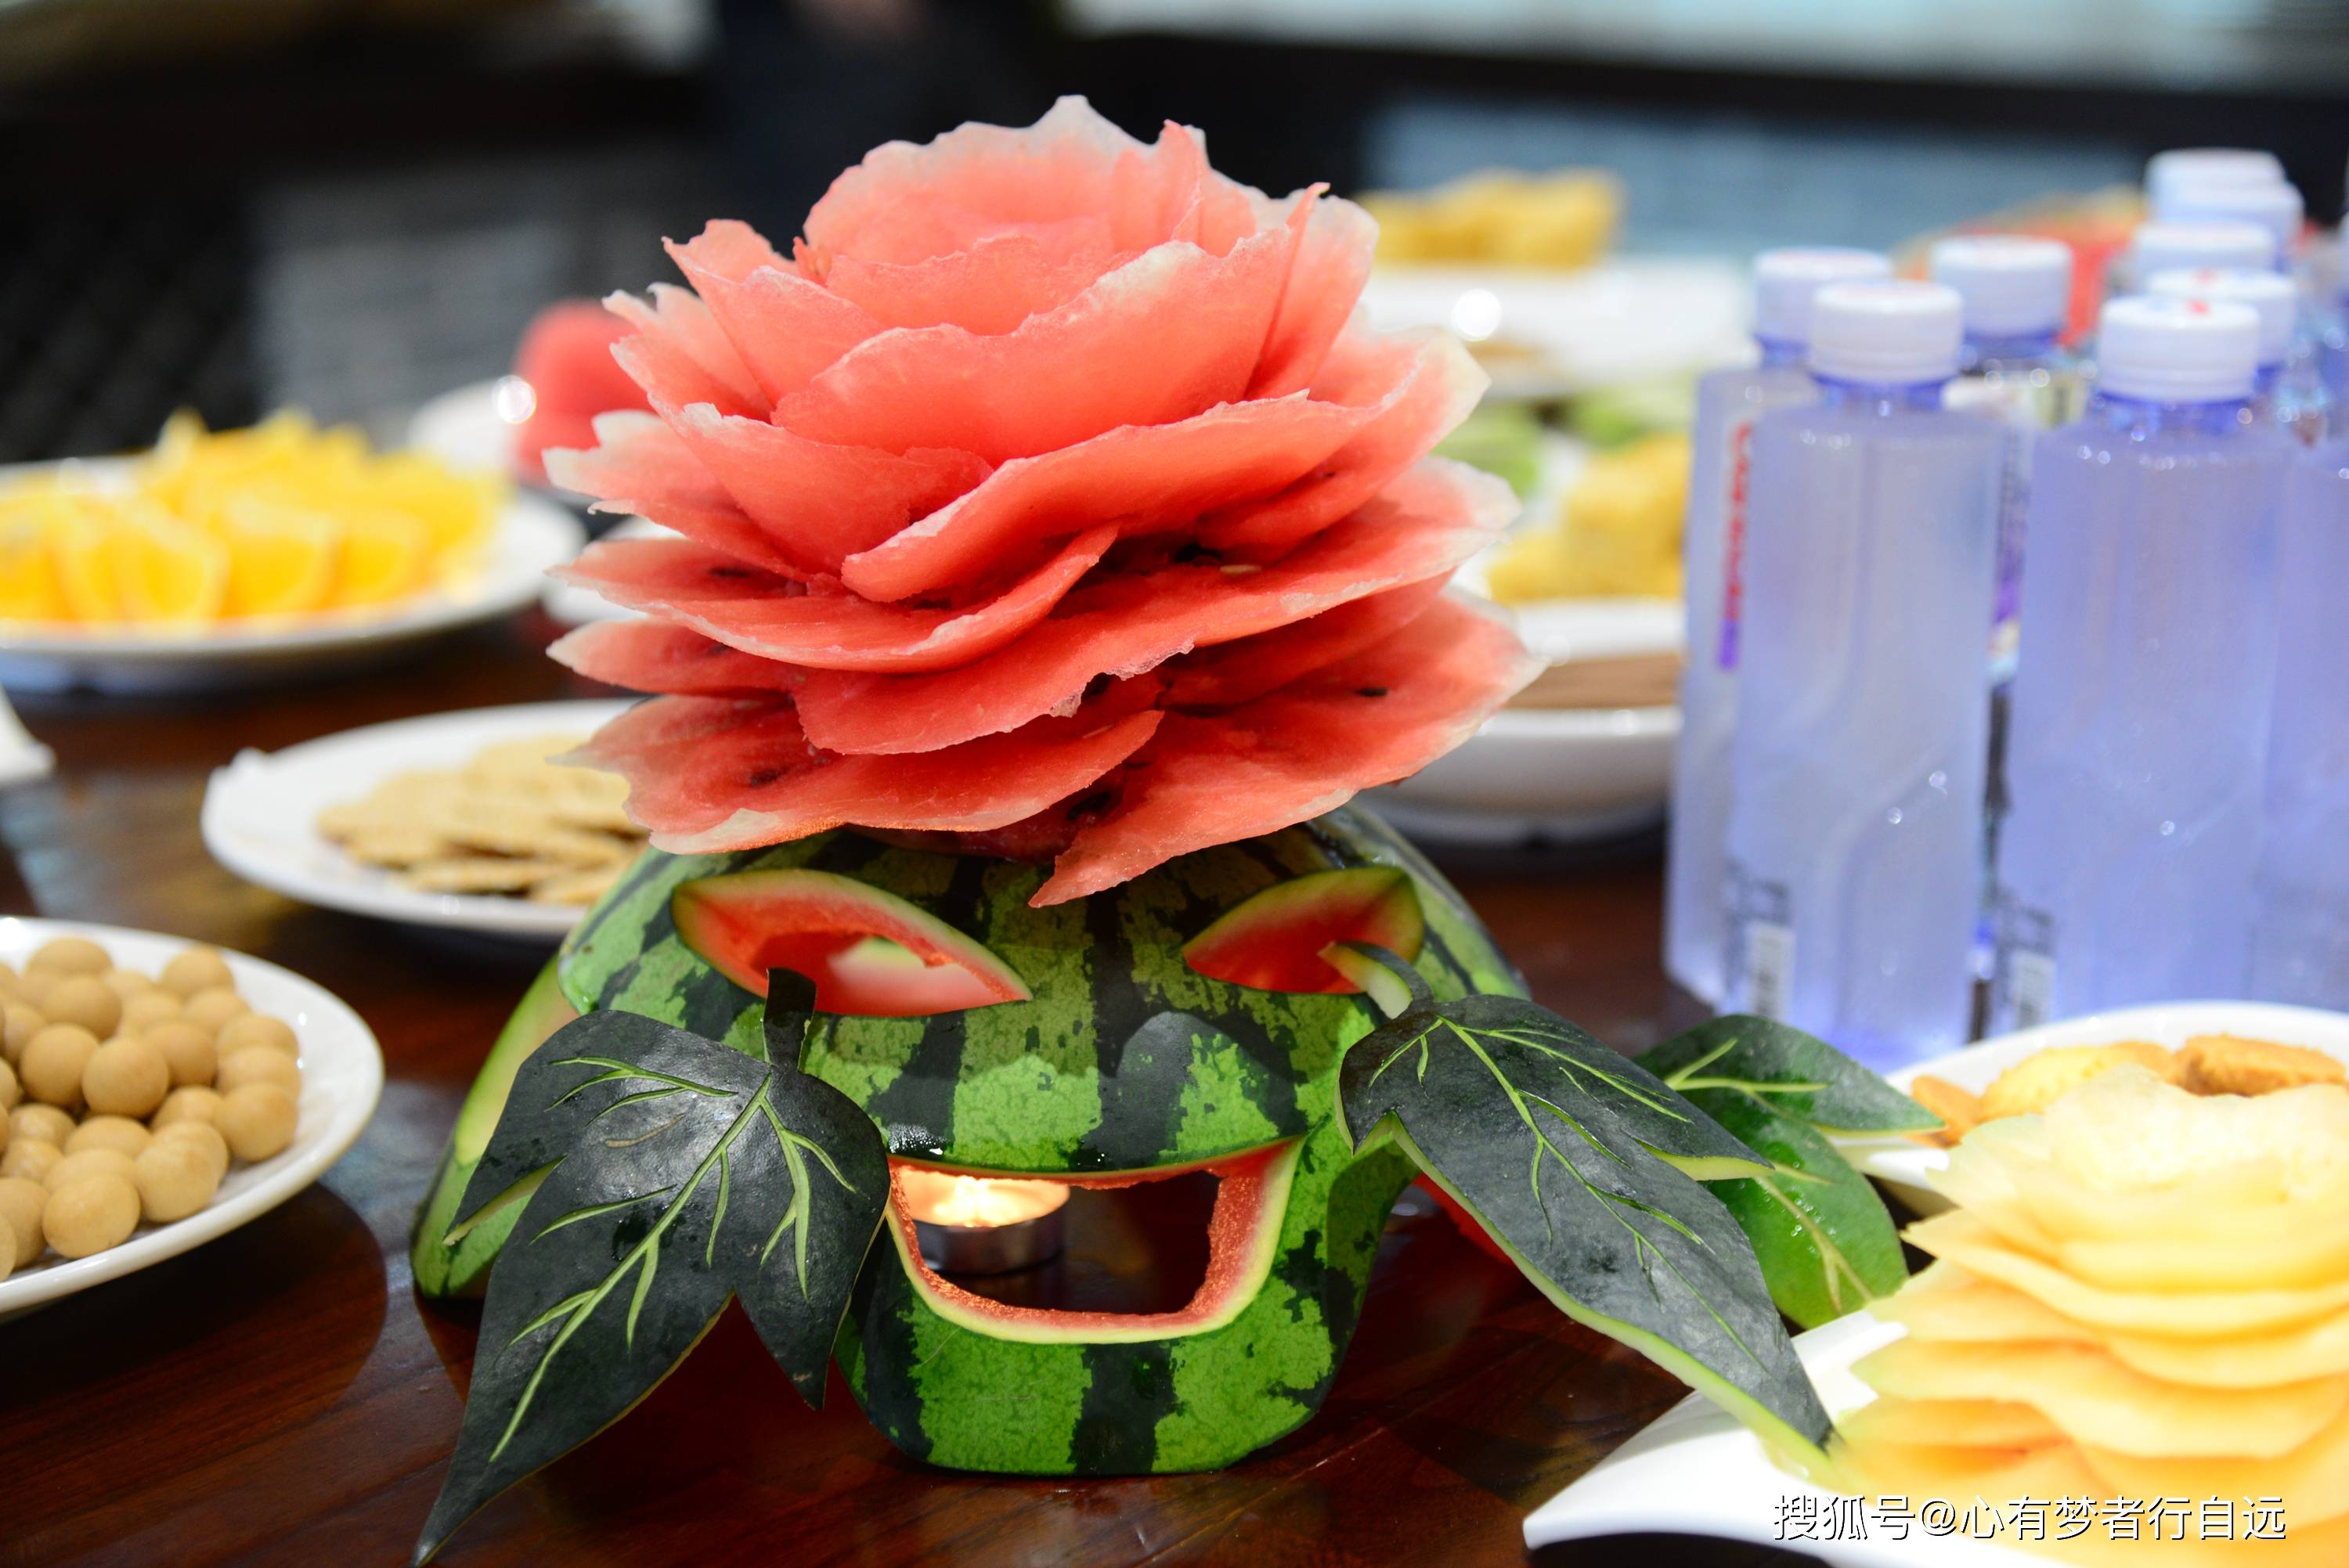 将西瓜雕刻成鲜花,如此娇艳美丽,让人怎忍心吃它